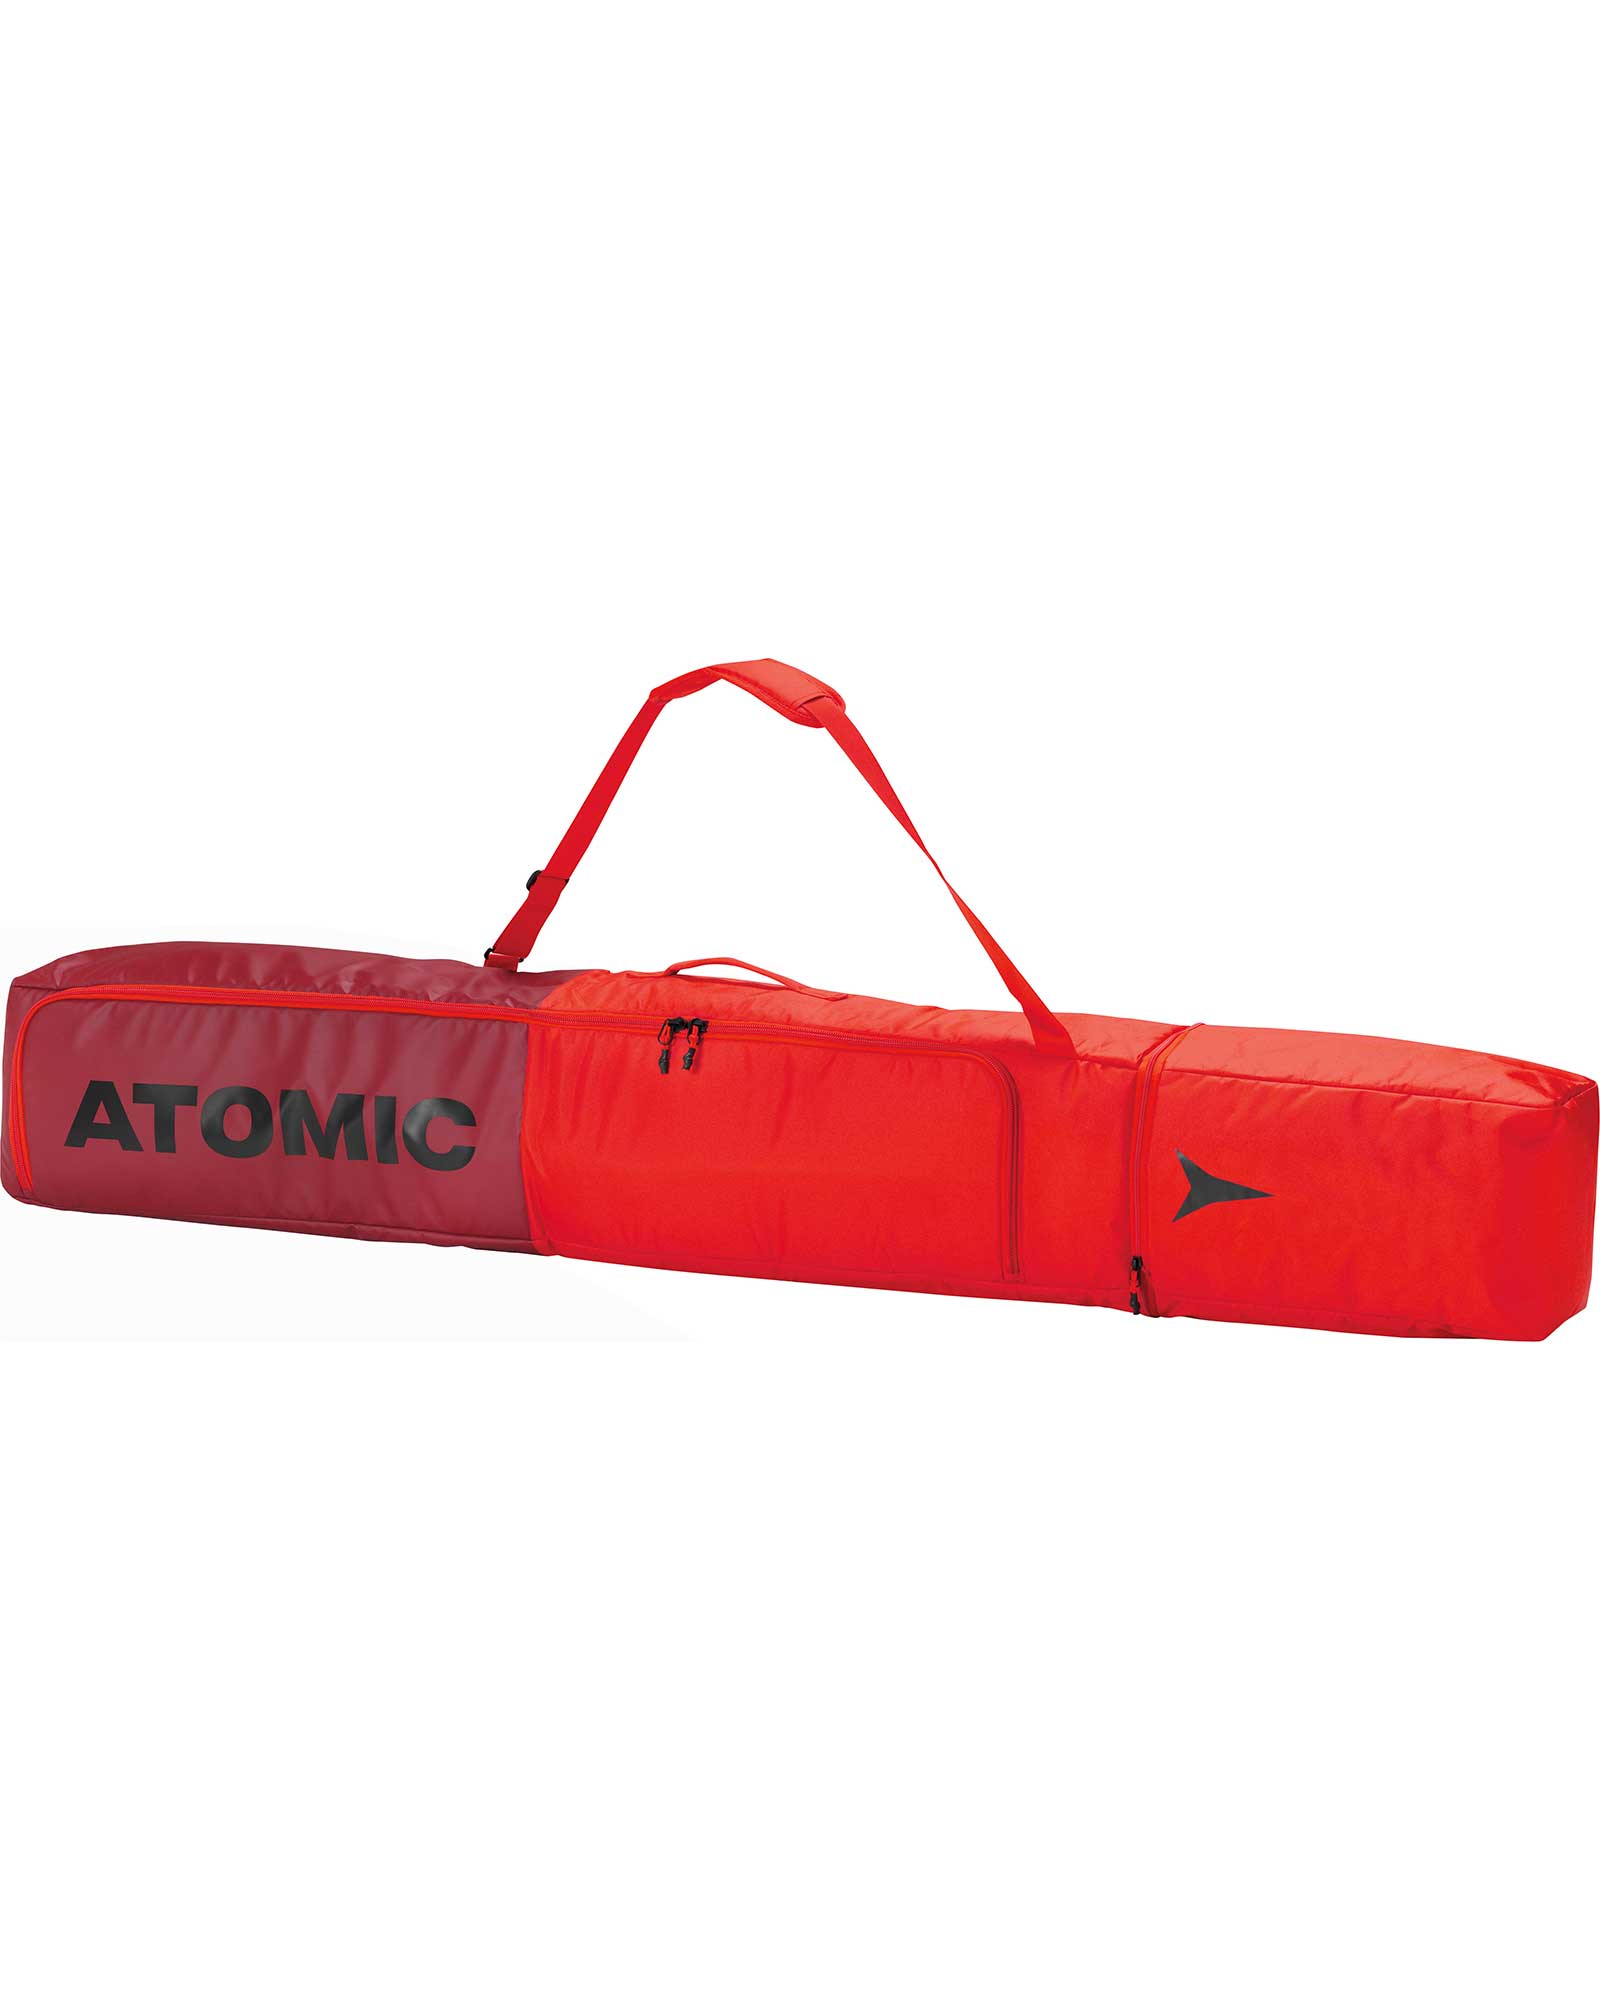 Atomic Double Ski Bag - Rio Red